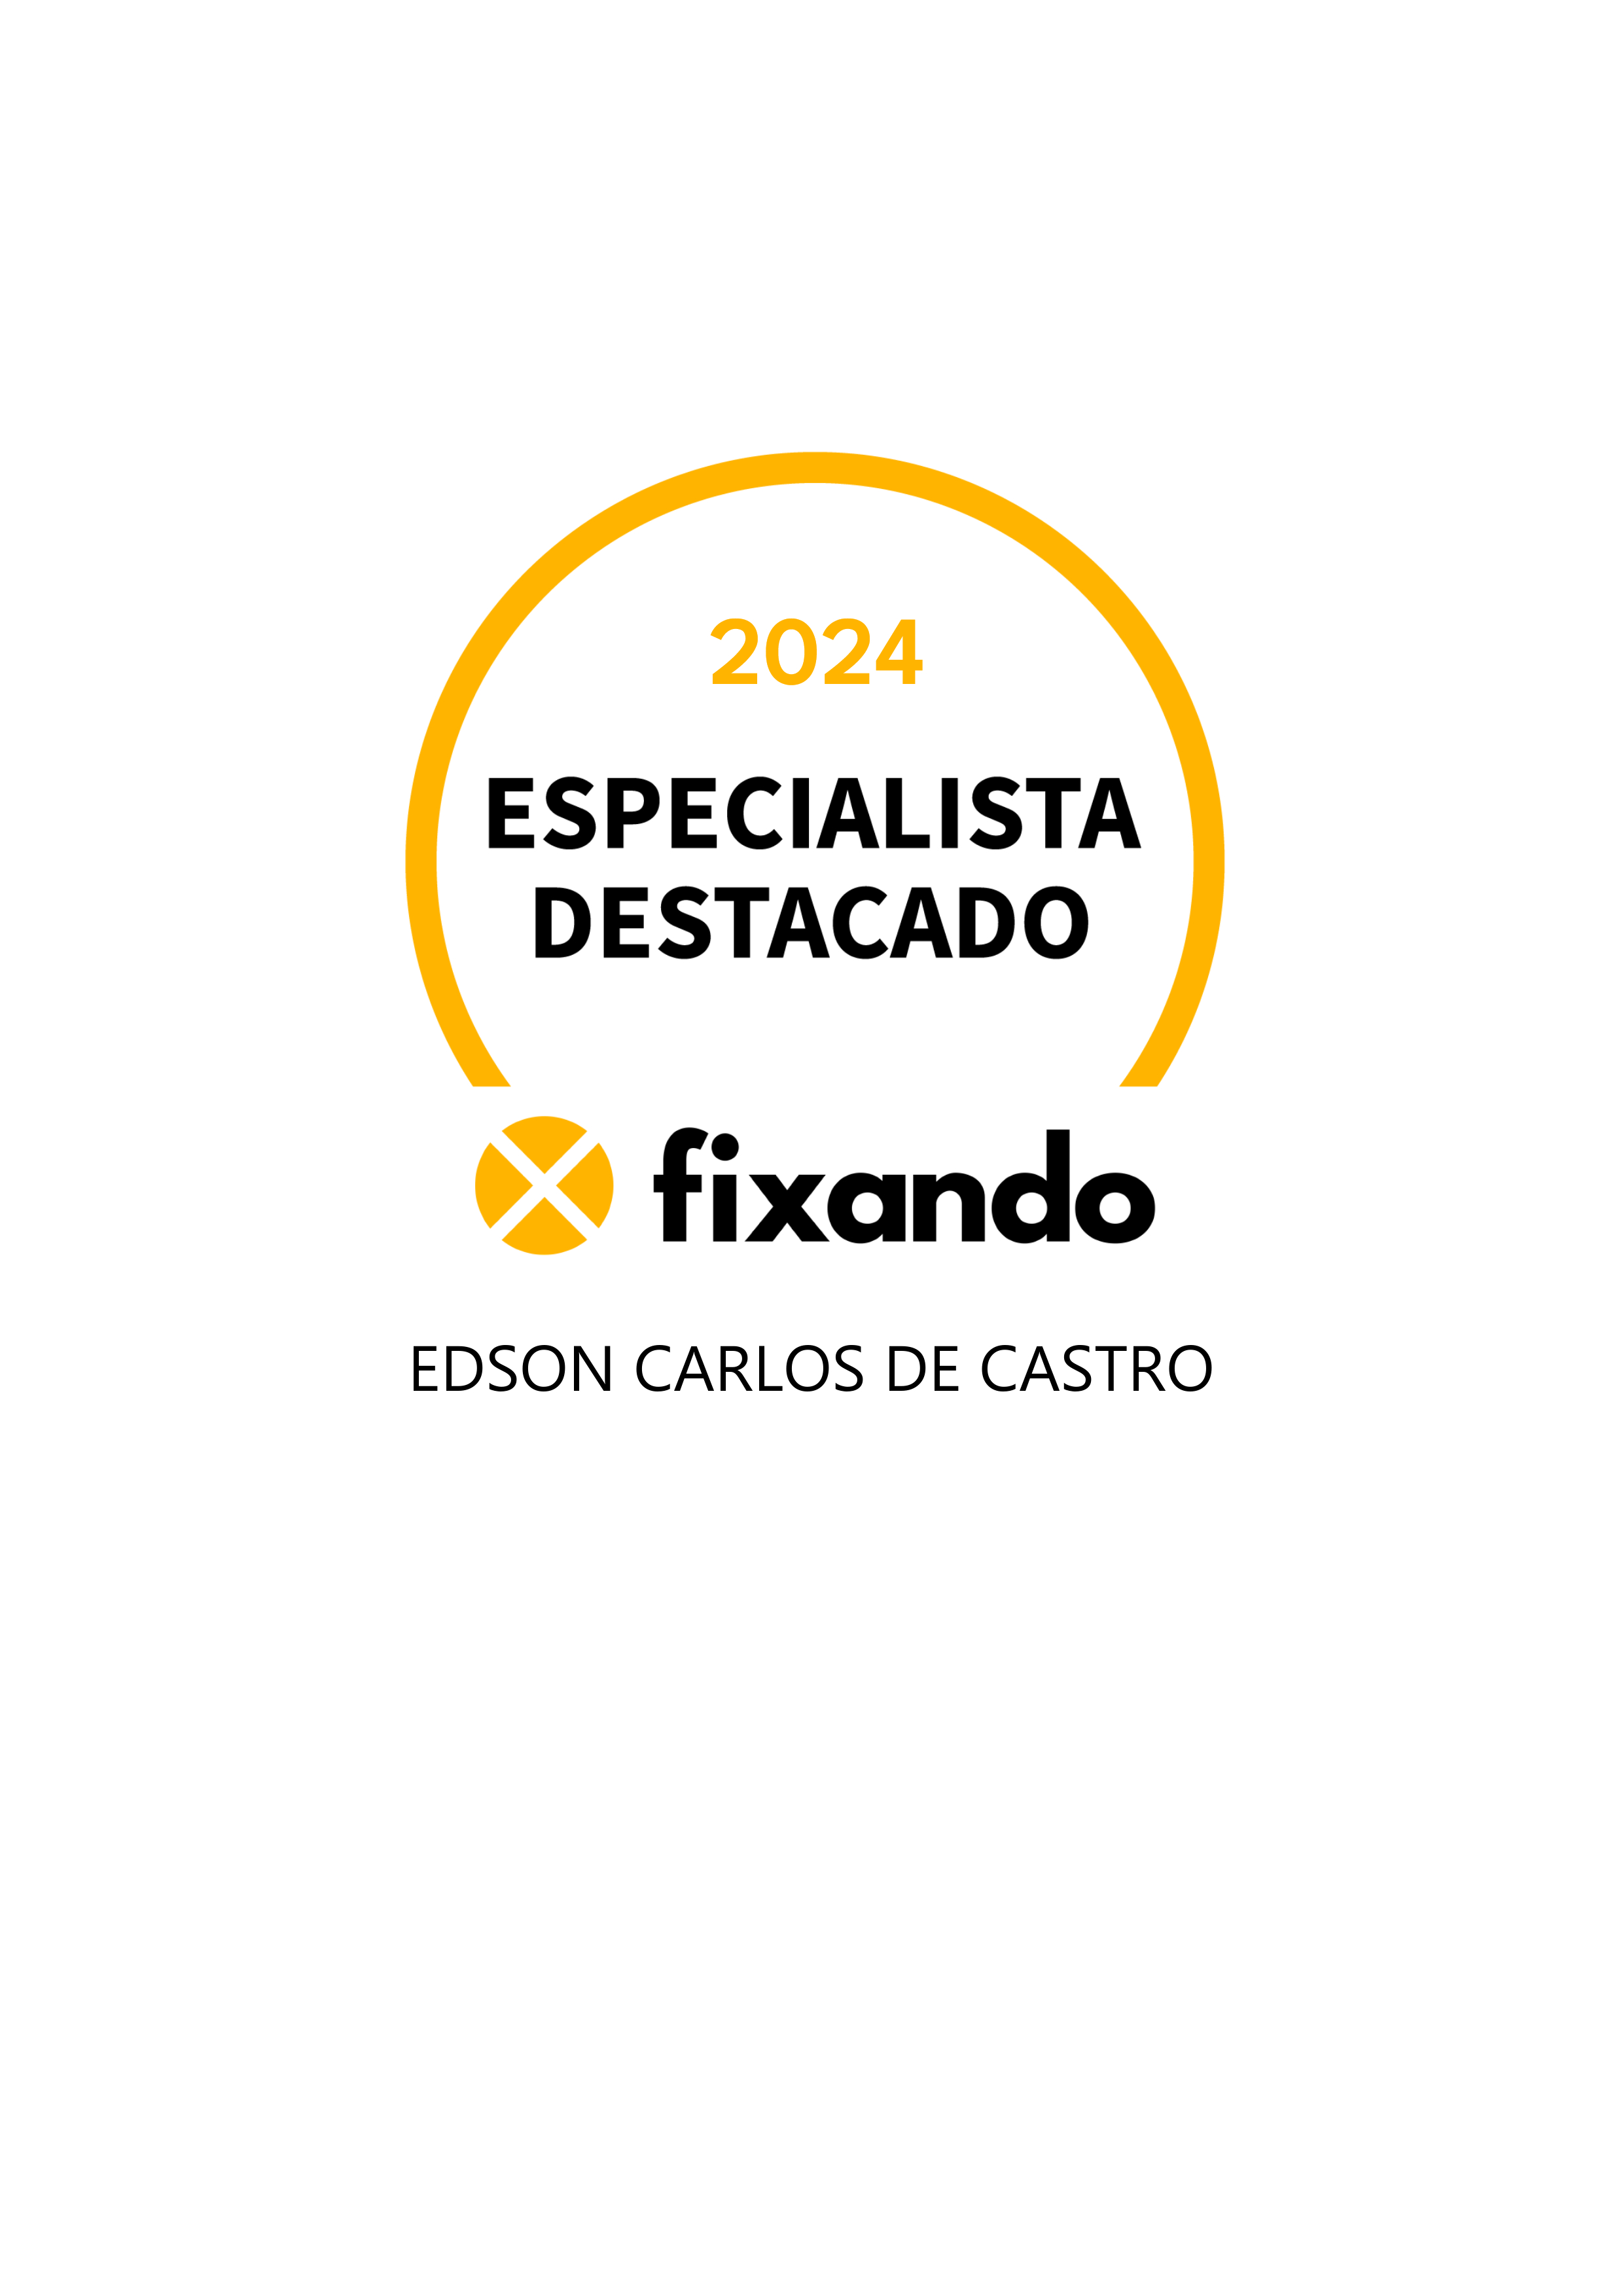 Edson Carlos de Castro - Vila Nova de Famalicão - Suporte Administrativo